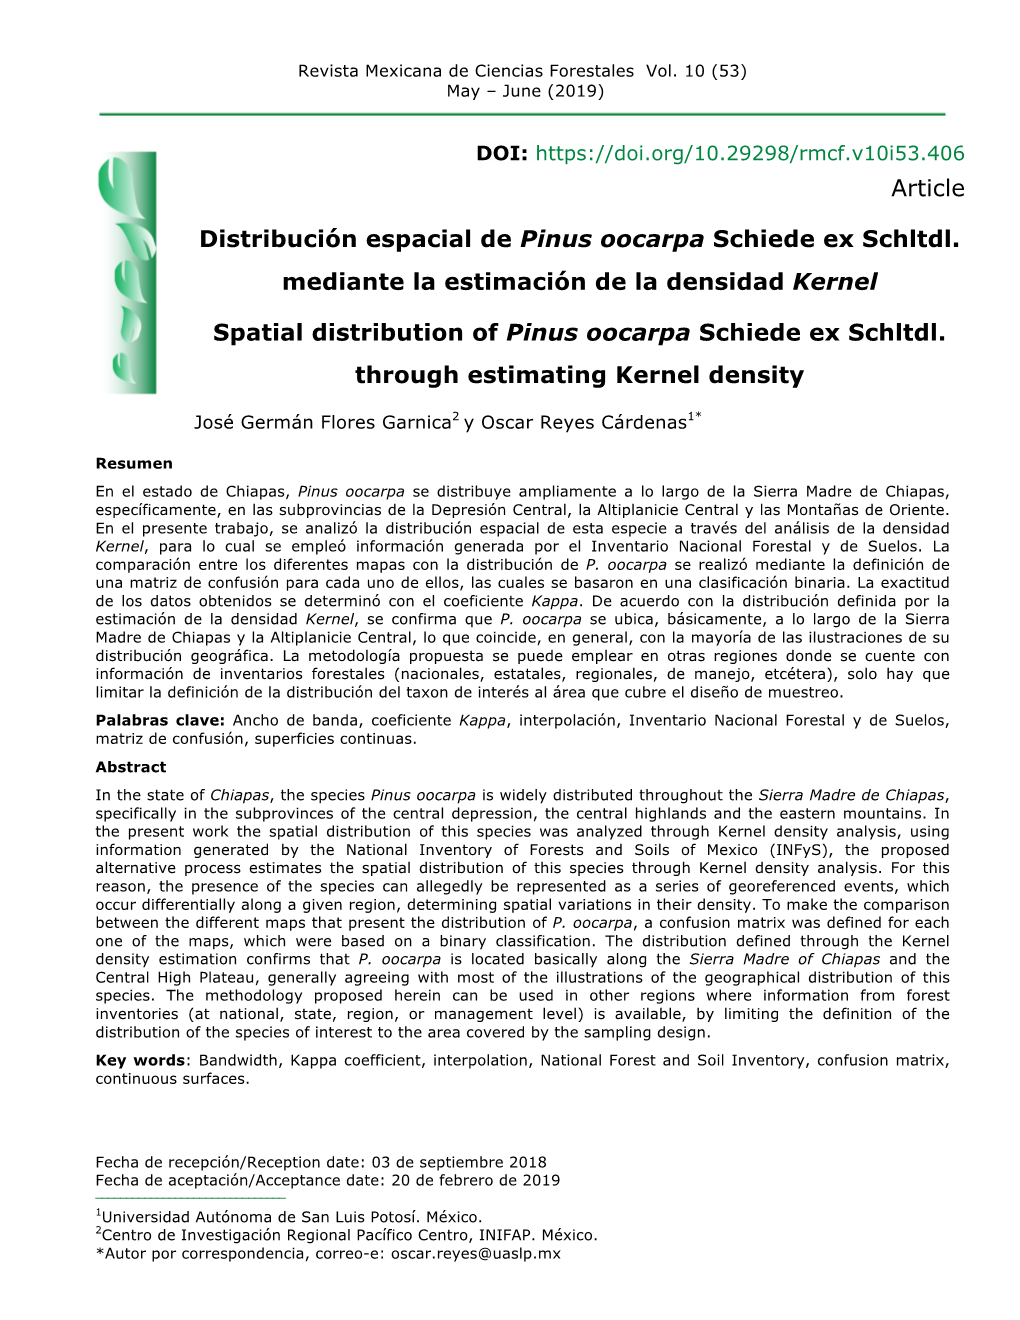 Article Distribución Espacial De Pinus Oocarpa Schiede Ex Schltdl